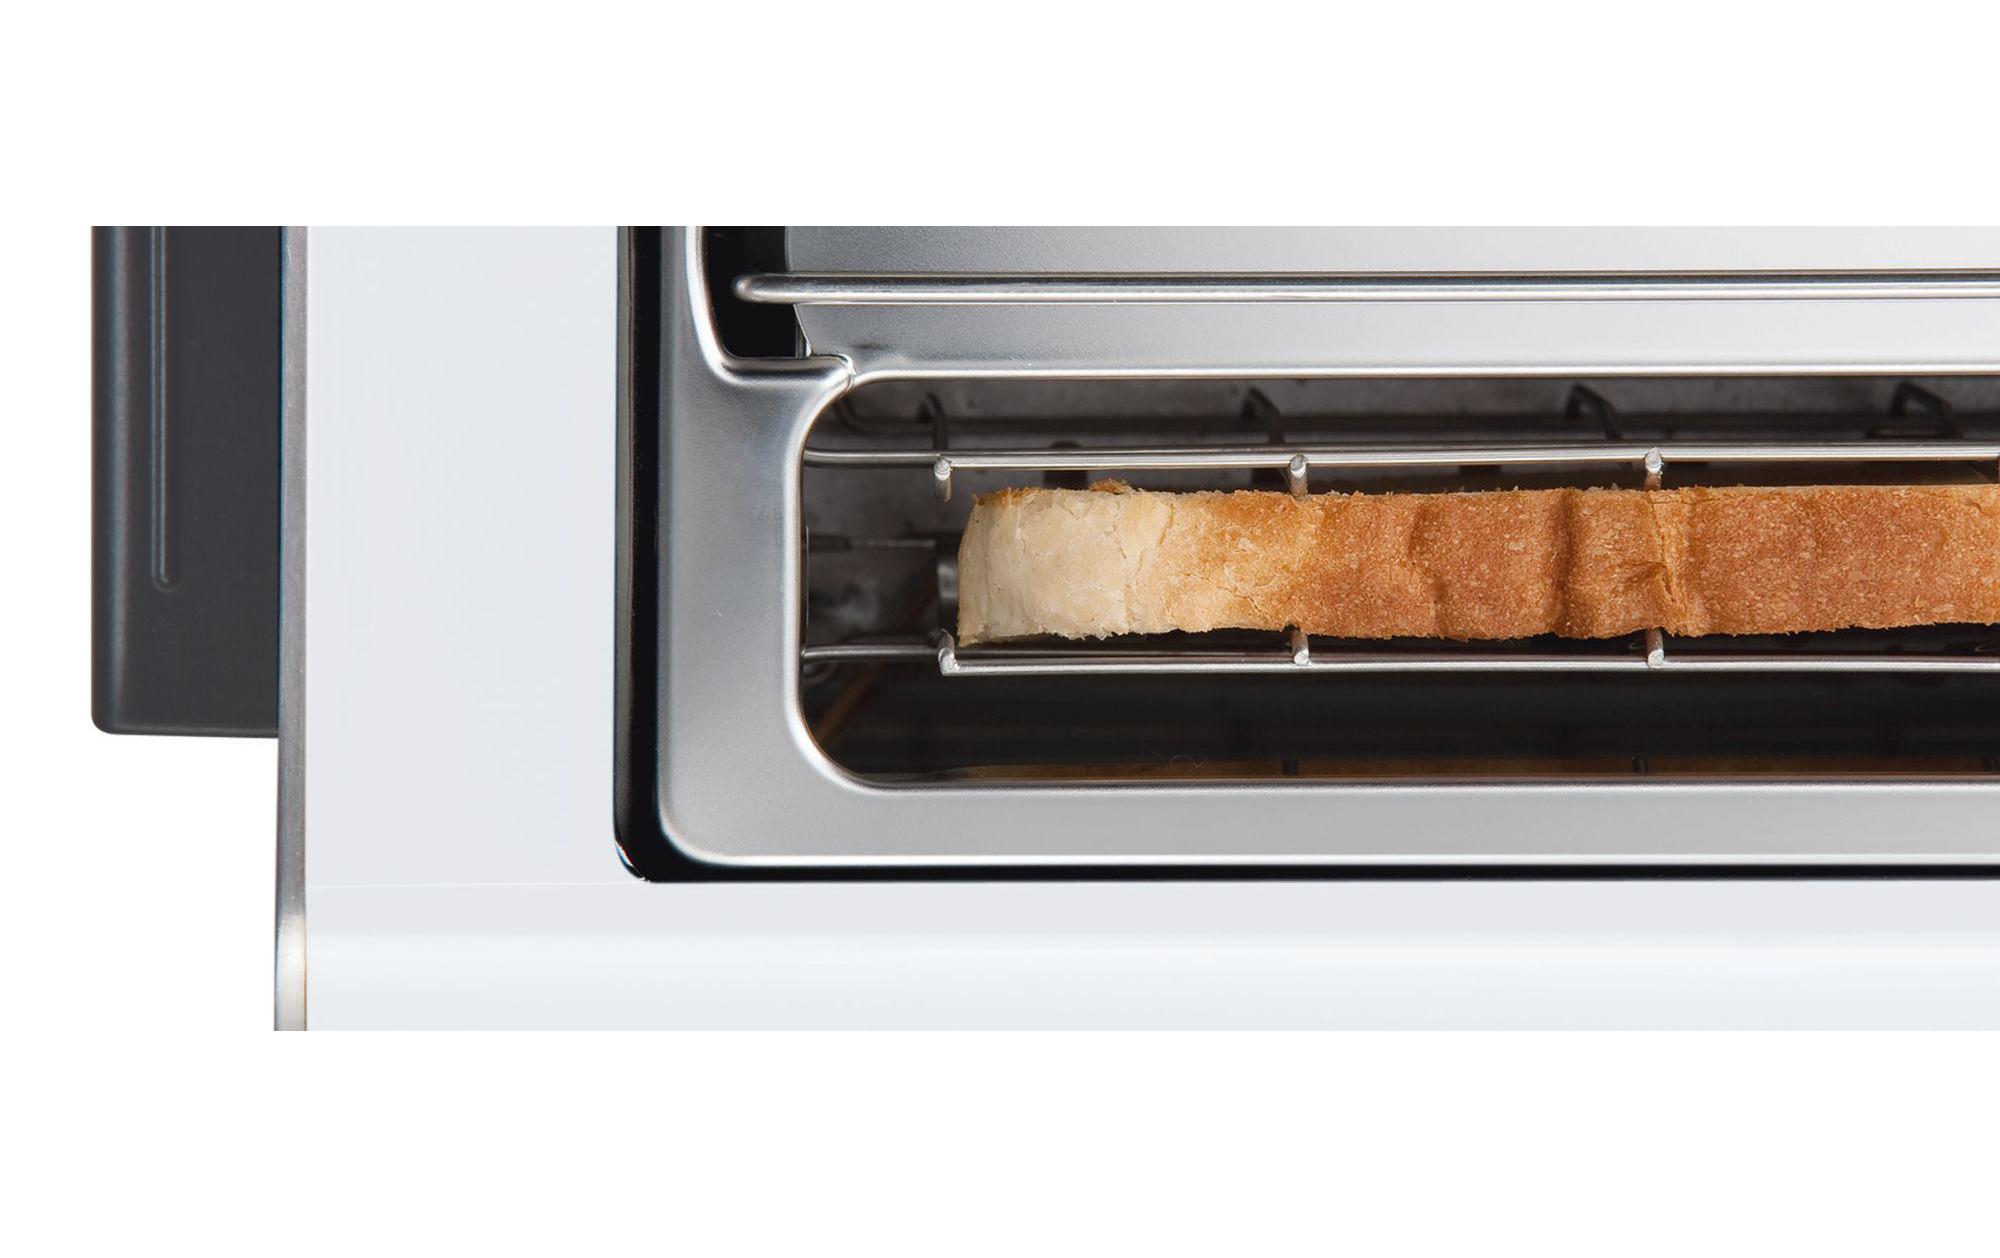 Bosch Toaster TAT8611 Weiss